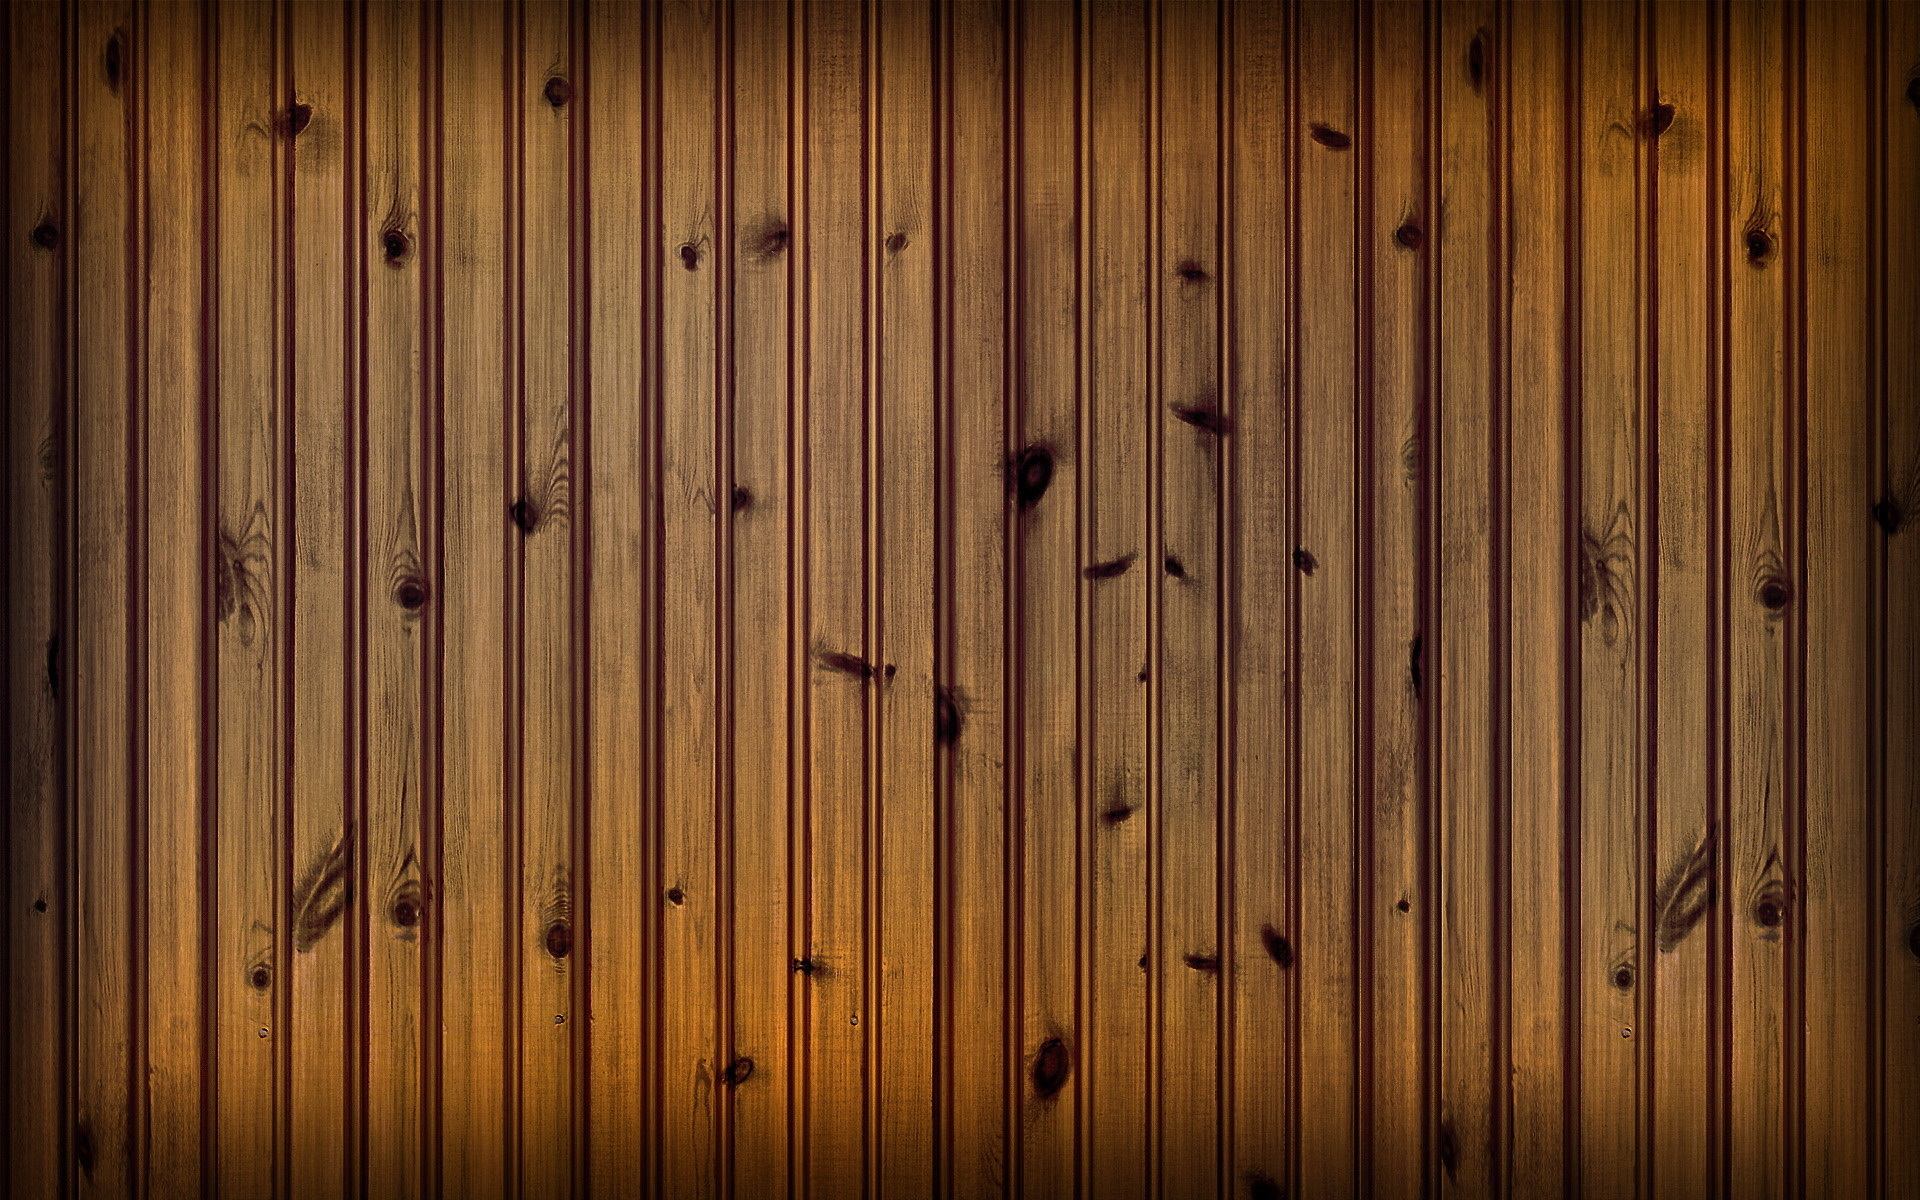 Artistic Wood 1920x1200